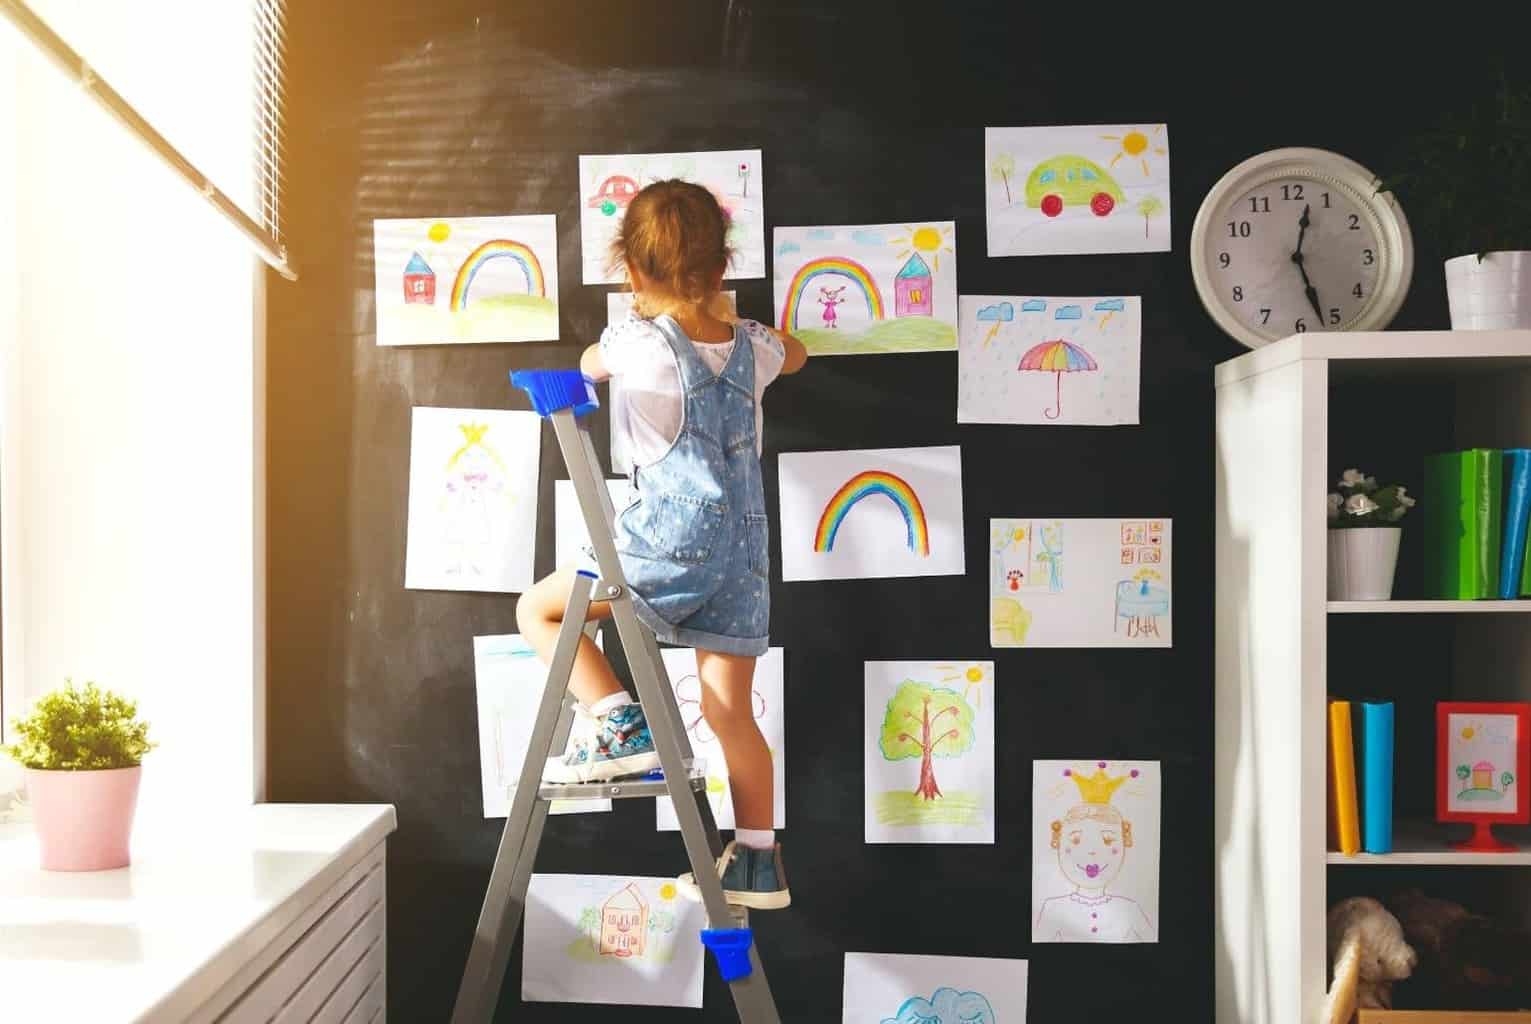 Artwork Overload - Children's Artwork Storage Solutions